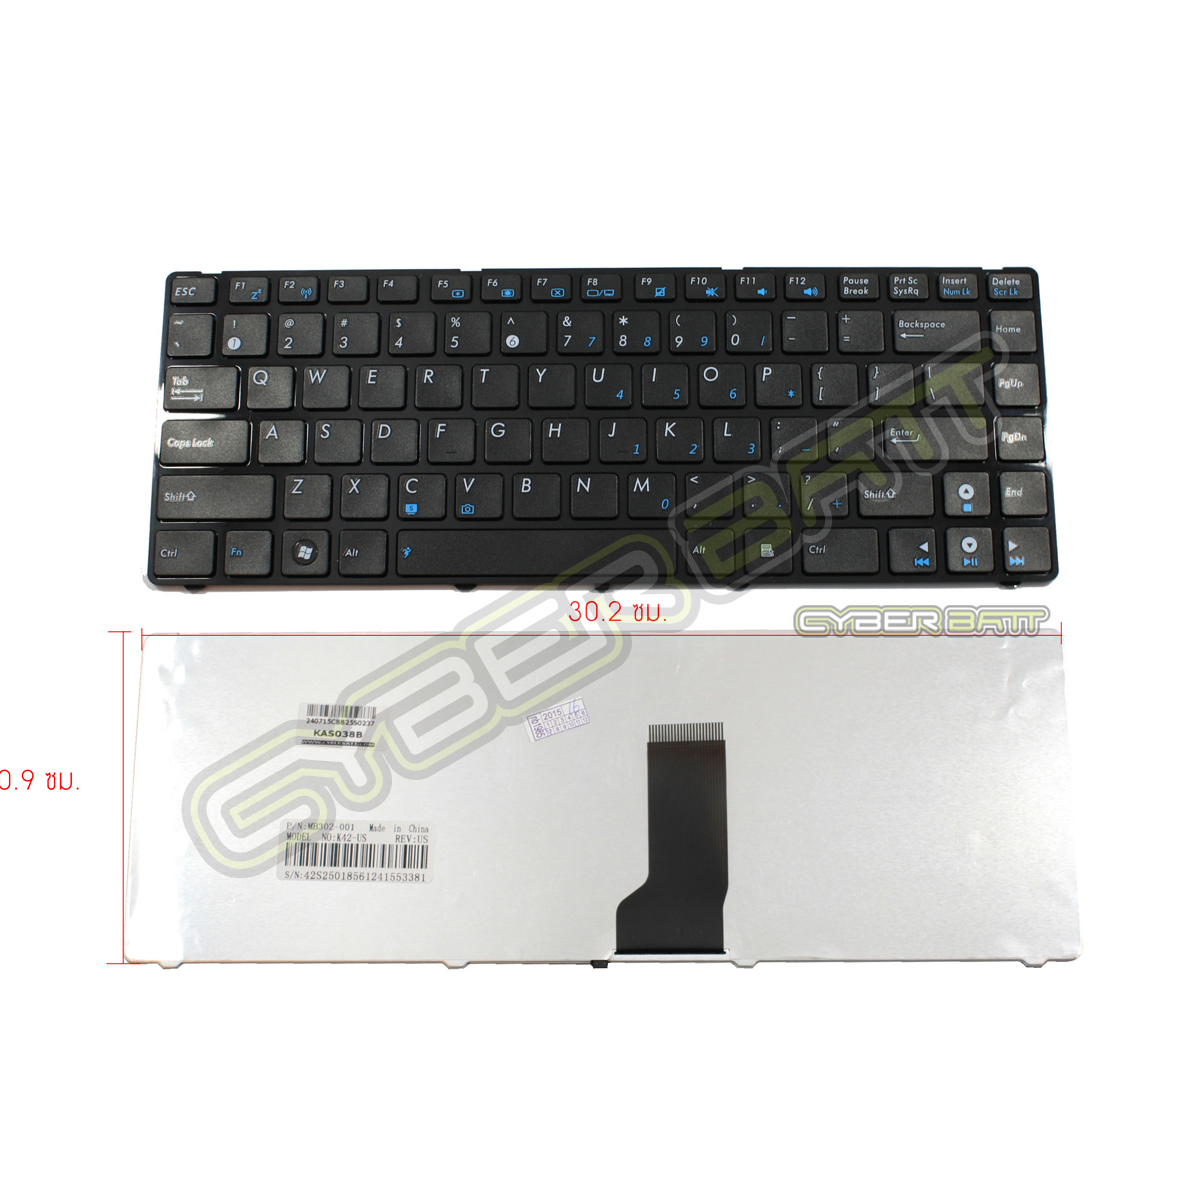 Keyboard Asus A42 Series Black US 